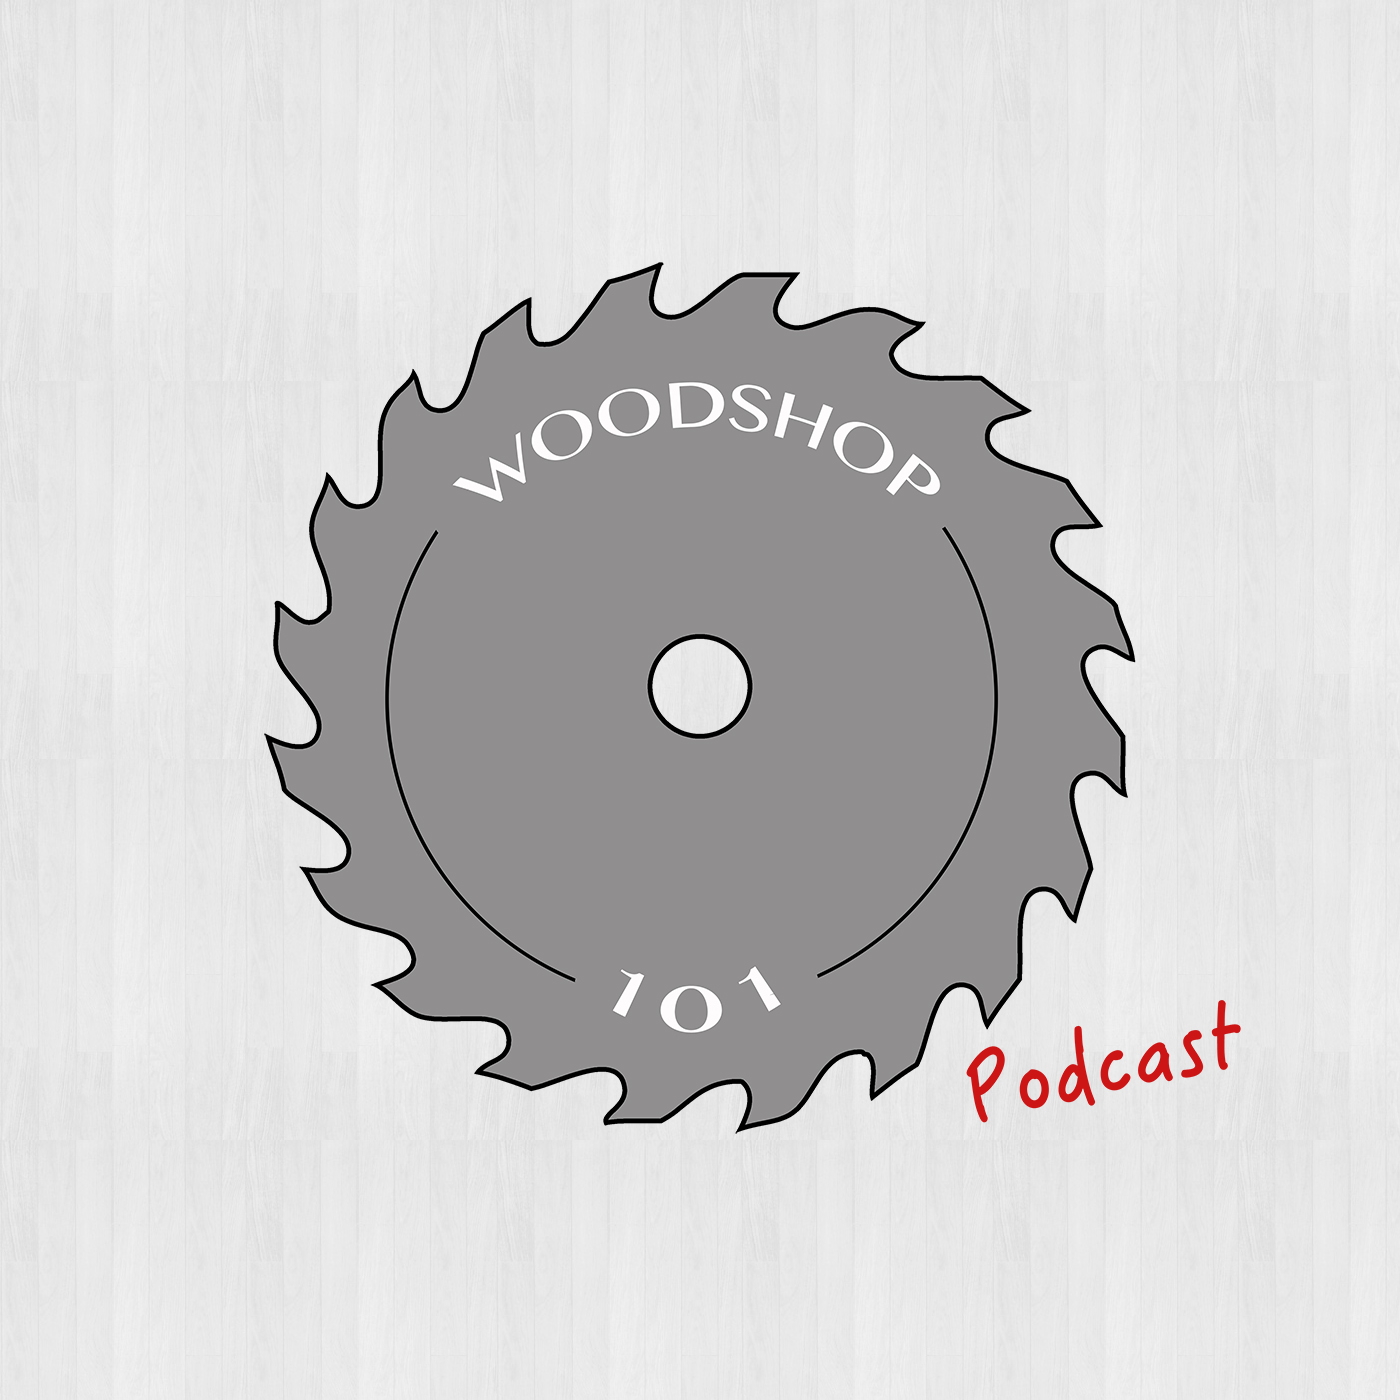 Woodshop 101 Podcast - Countryside Workshop